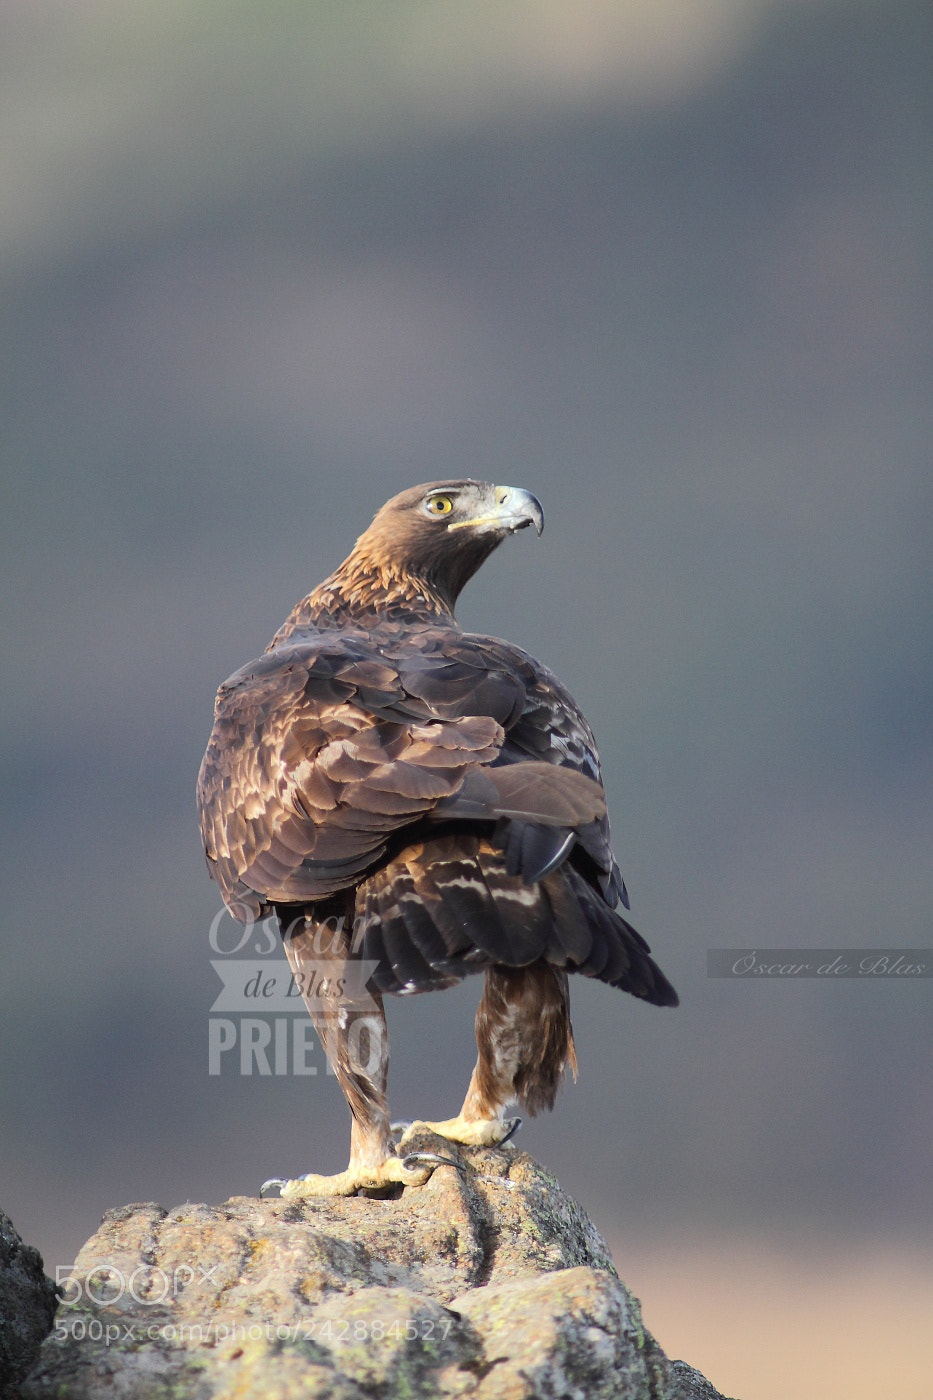 Canon EOS 7D sample photo. Golden eagle photography